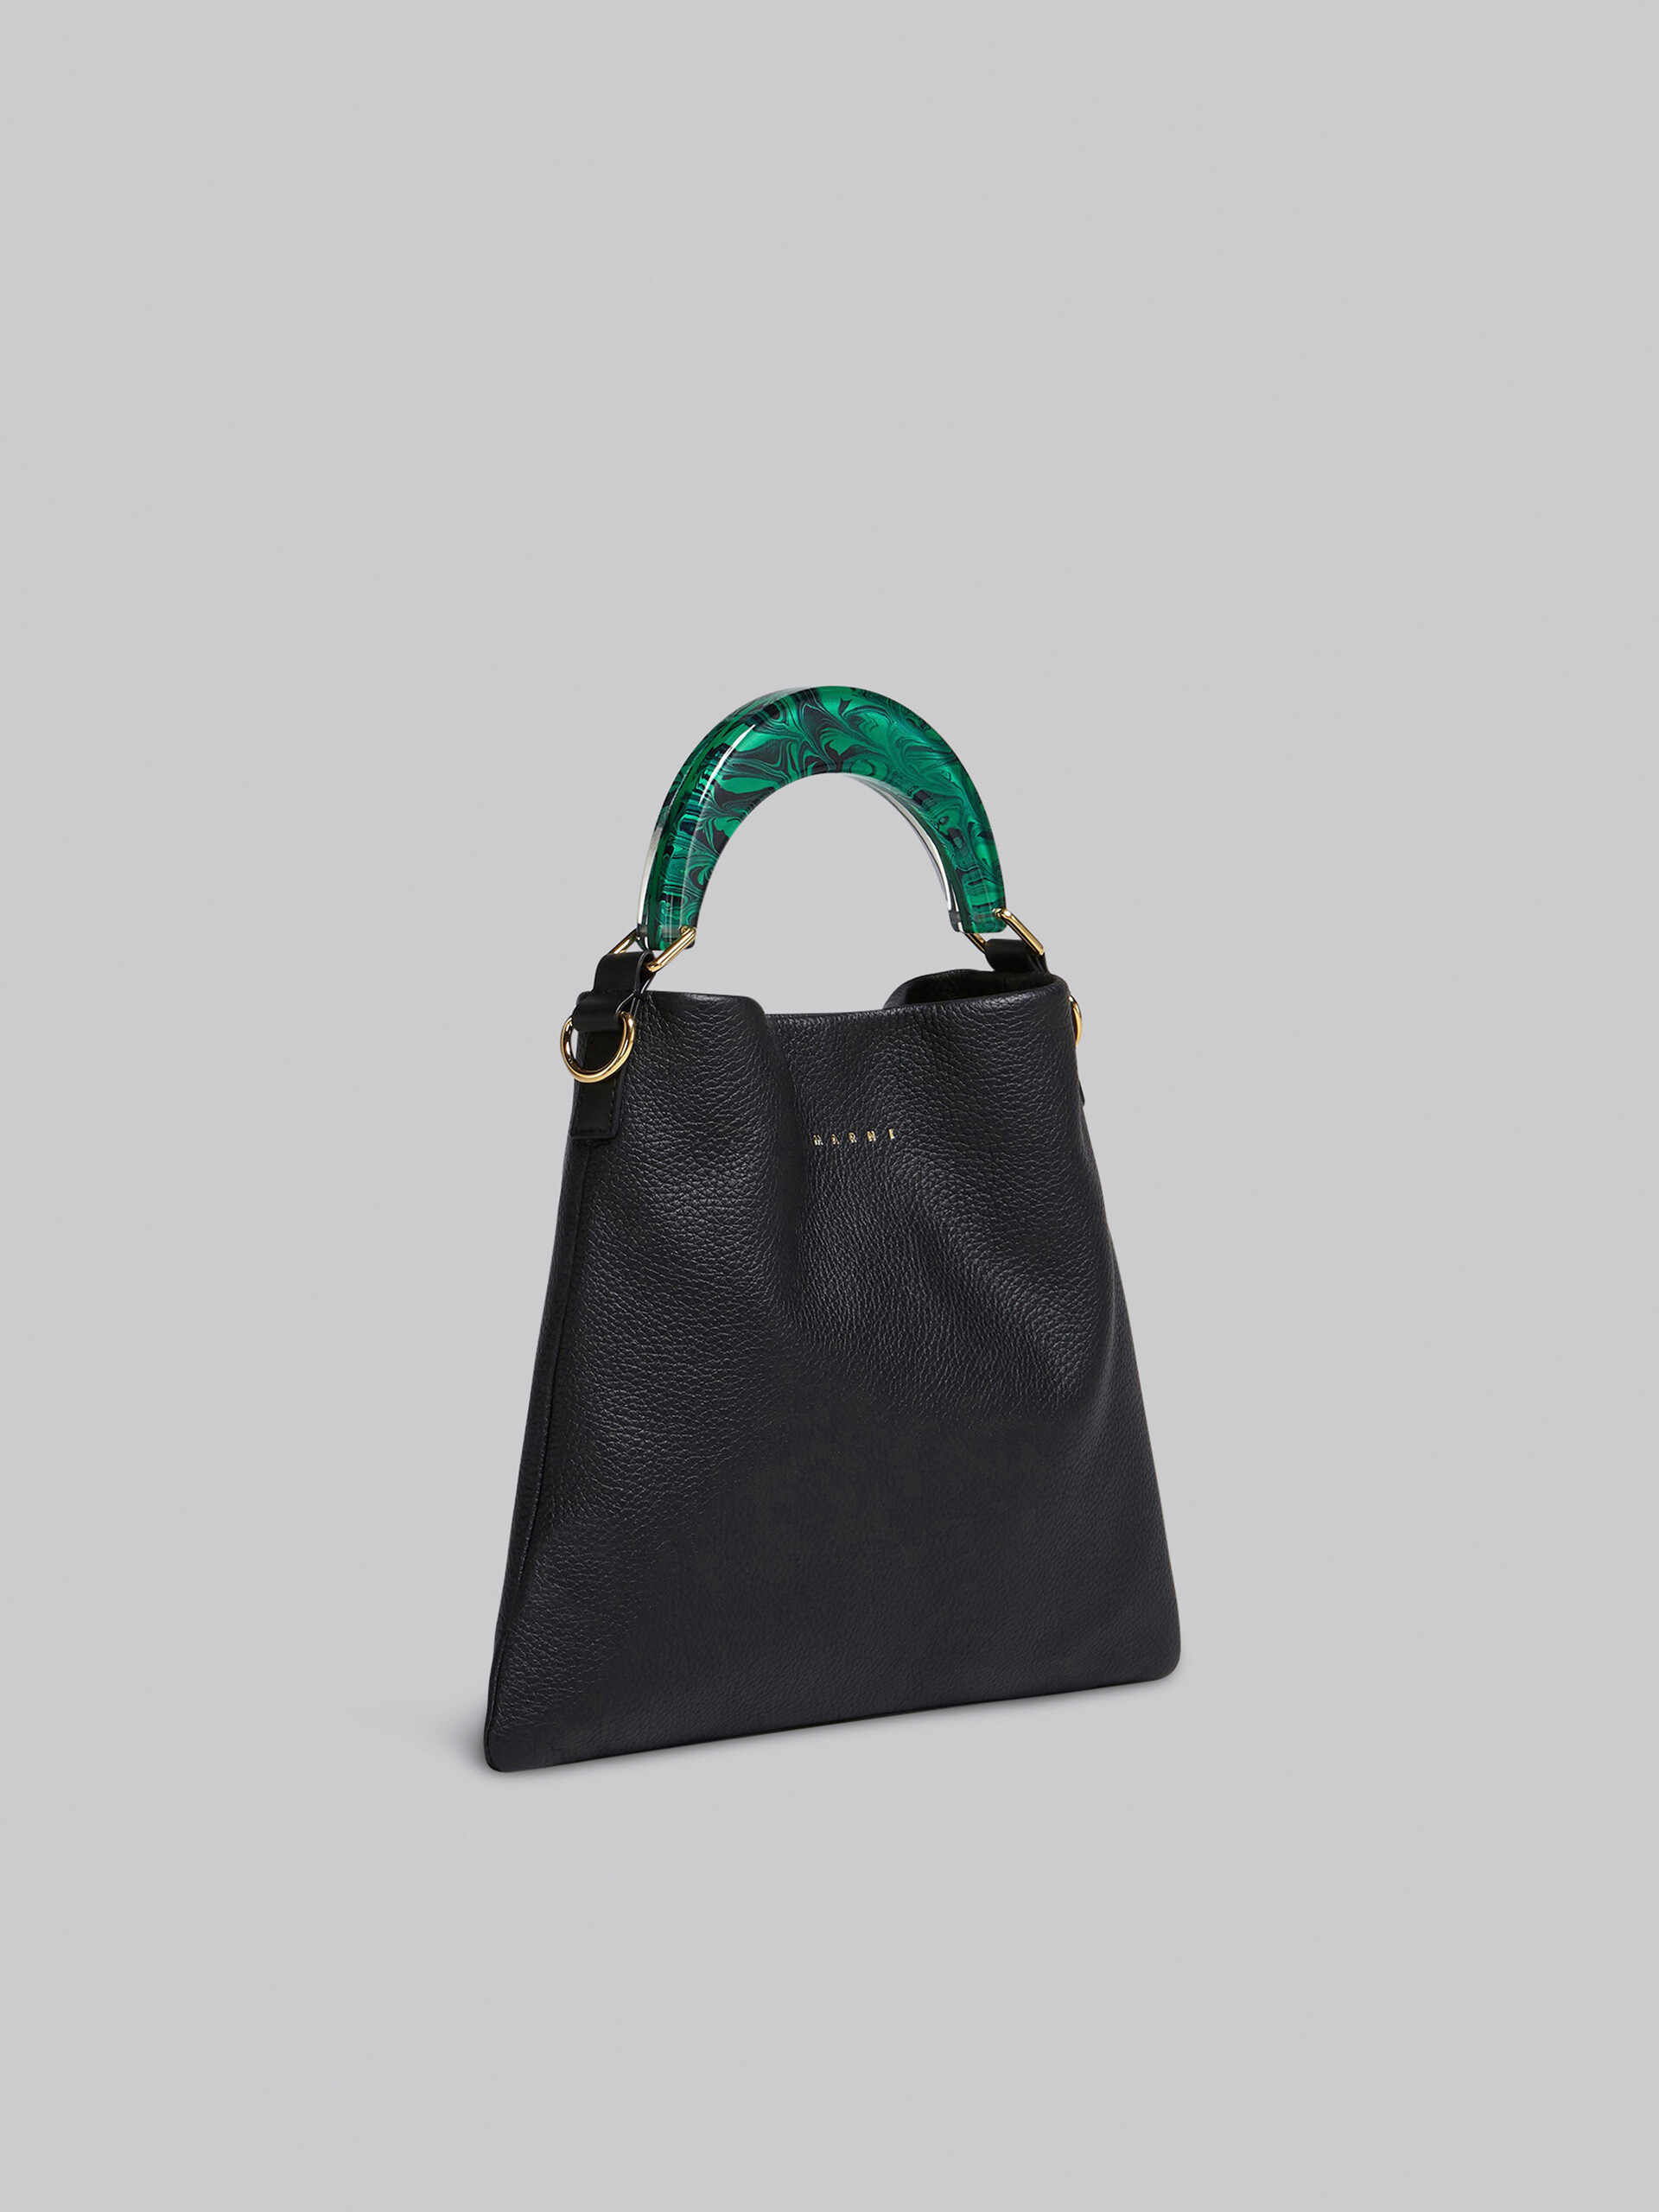 Petit sac Venice en cuir noir - Sacs portés épaule - Image 6